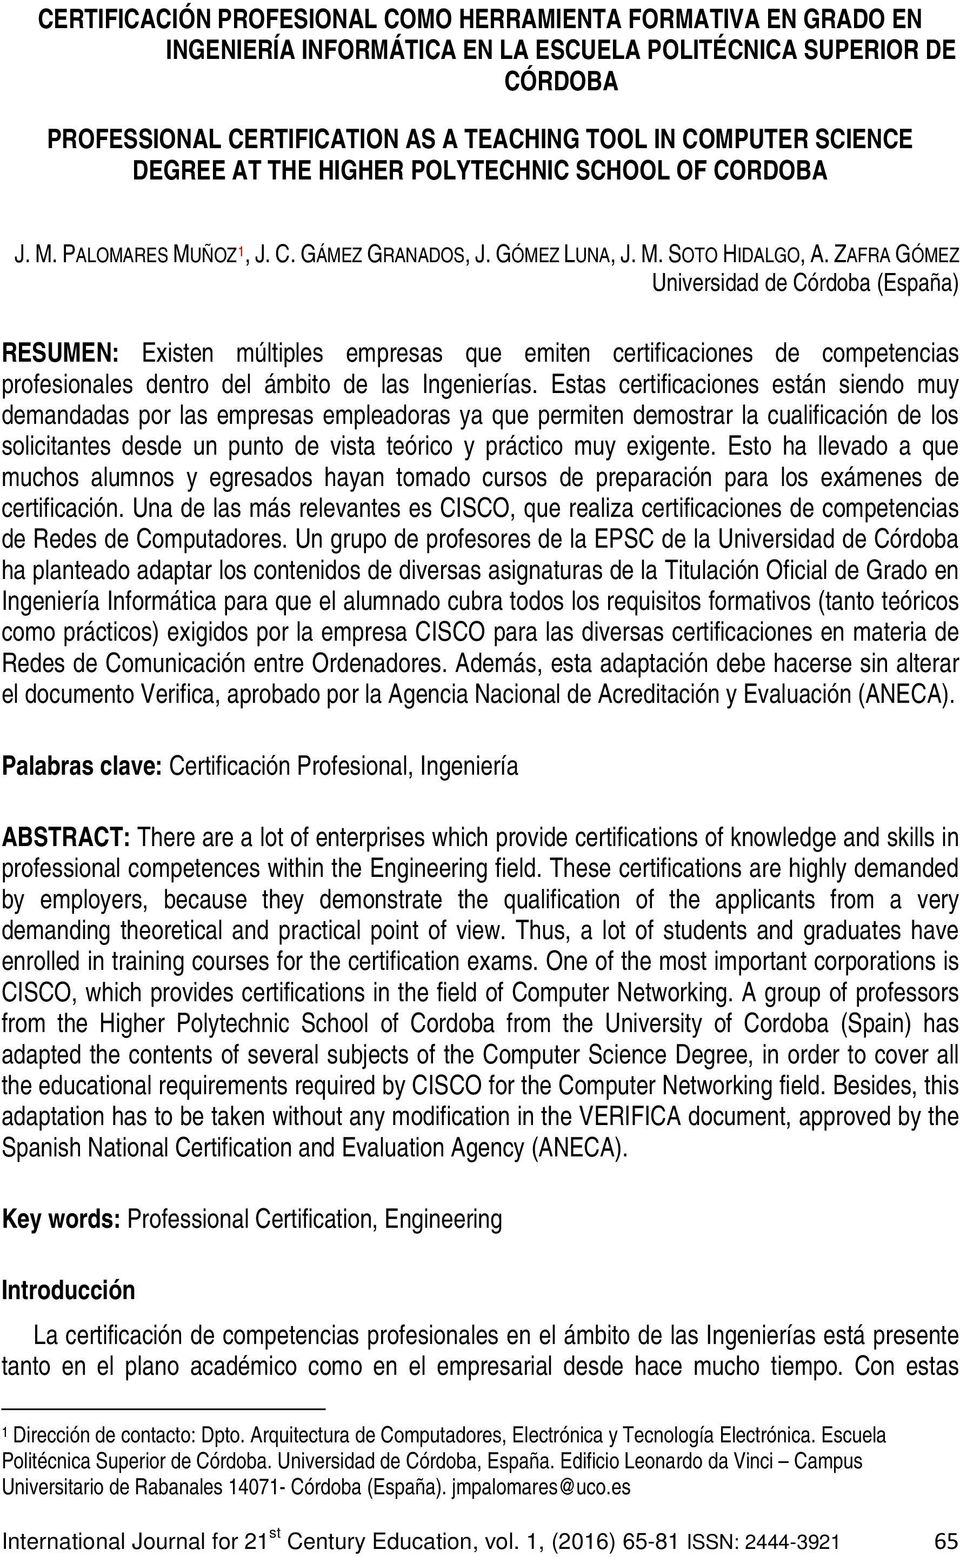 ZAFRA GÓMEZ Universidad de Córdoba (España) RESUMEN: Existen múltiples empresas que emiten certificaciones de competencias profesionales dentro del ámbito de las Ingenierías.